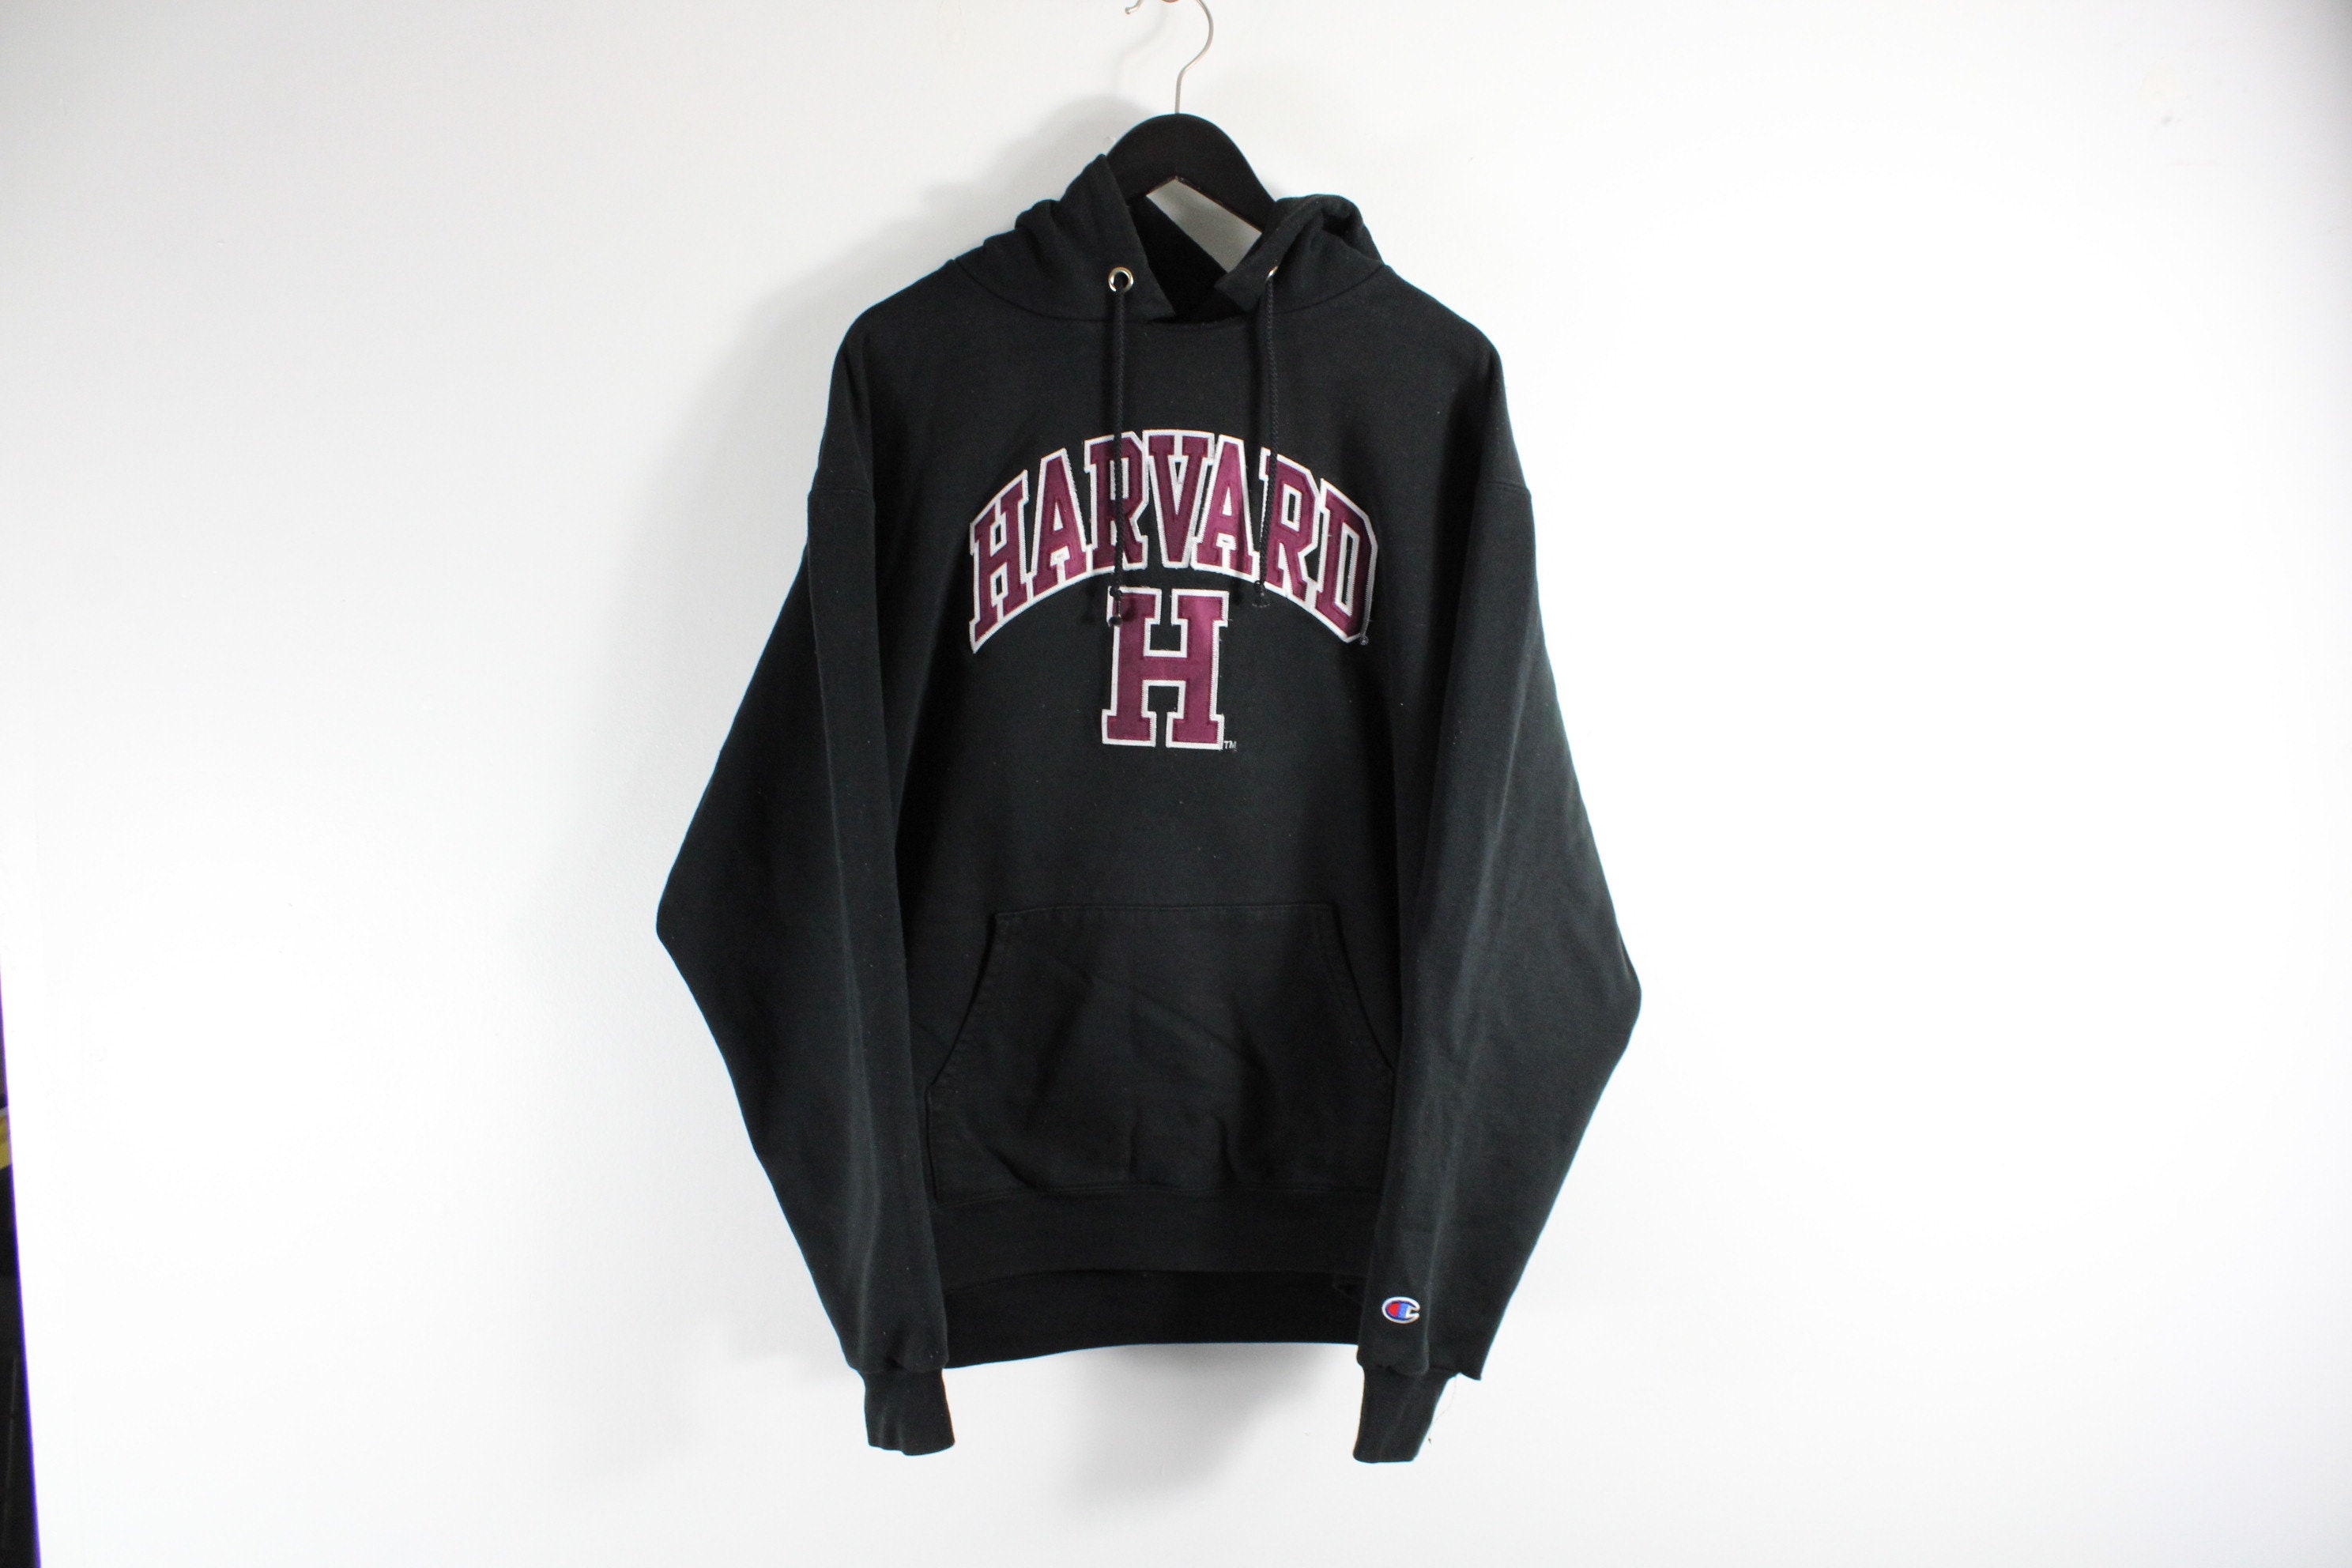 eterno Oral diversión Harvard Sweater / Vintage University Campus / Sudadera con - Etsy México